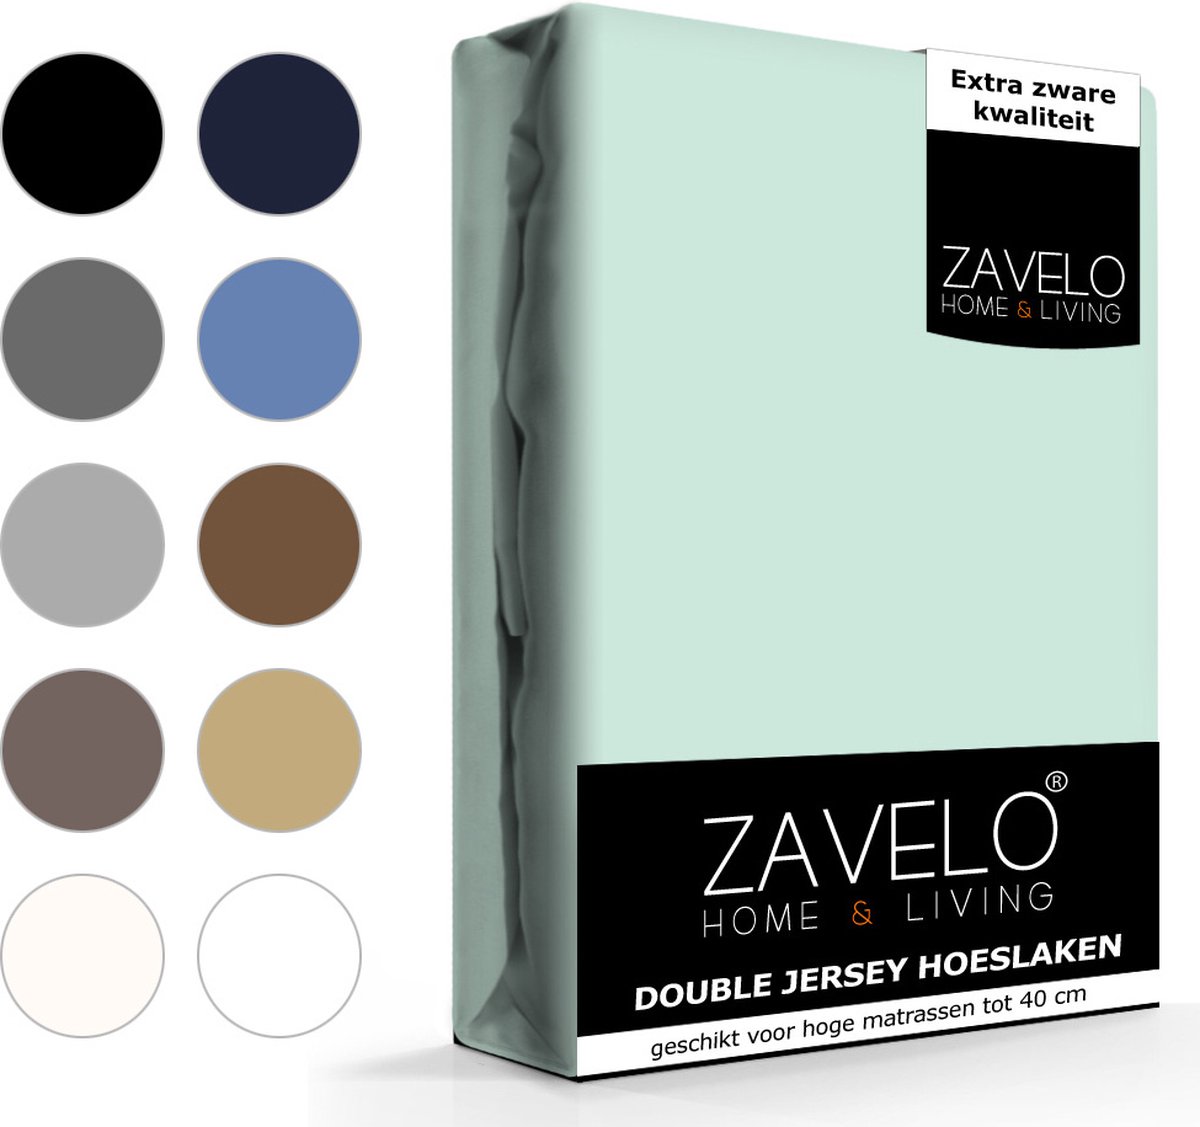 Slaaptextiel Zavelo Double Jersey Hoeslaken Pastel-1-persoons (90x220 Cm) - Blauw